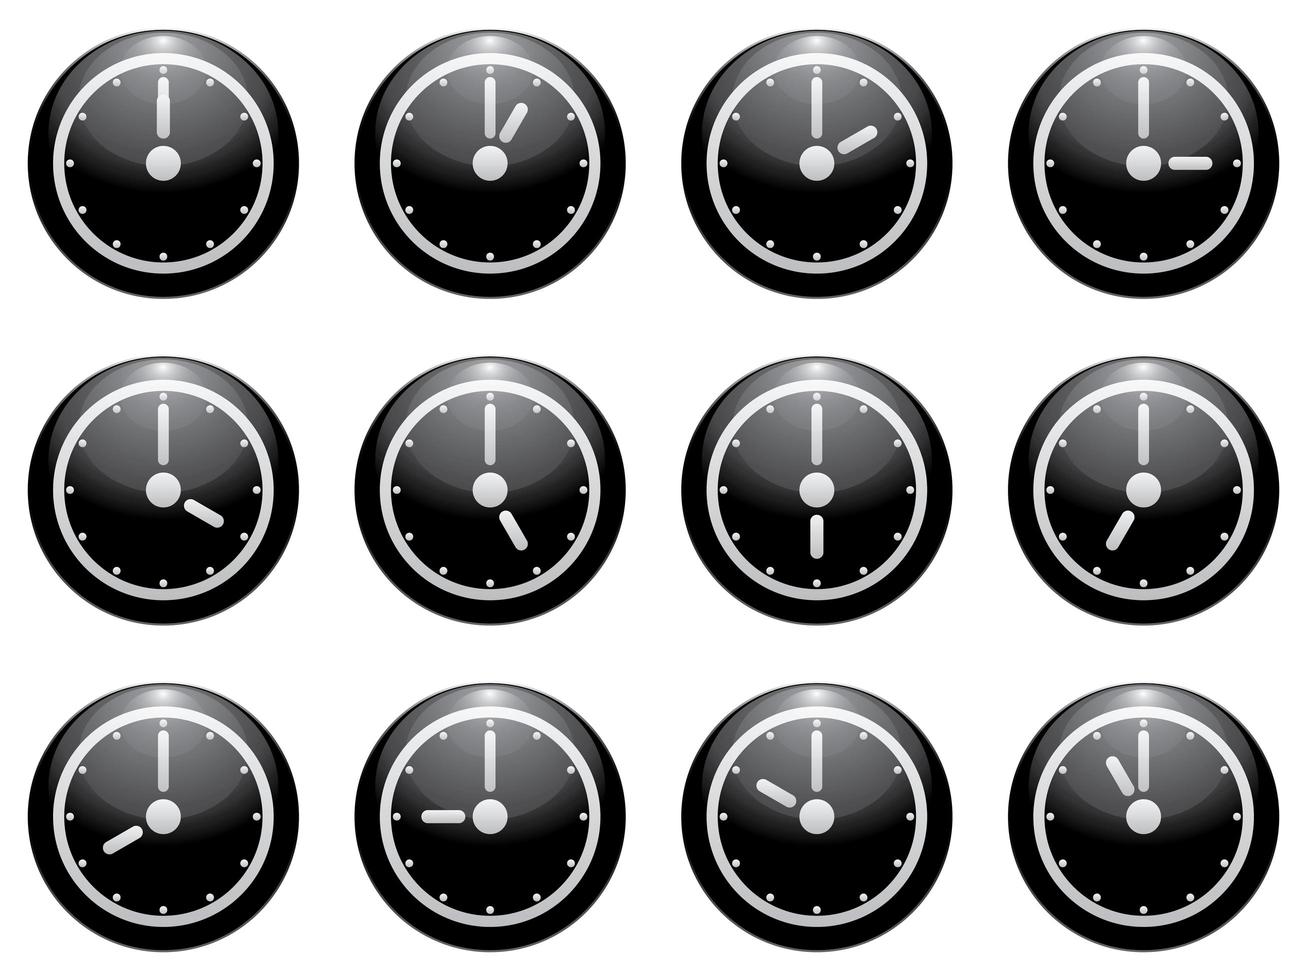 Uhrensymbol gesetzt weiß auf schwarz isoliert vektor